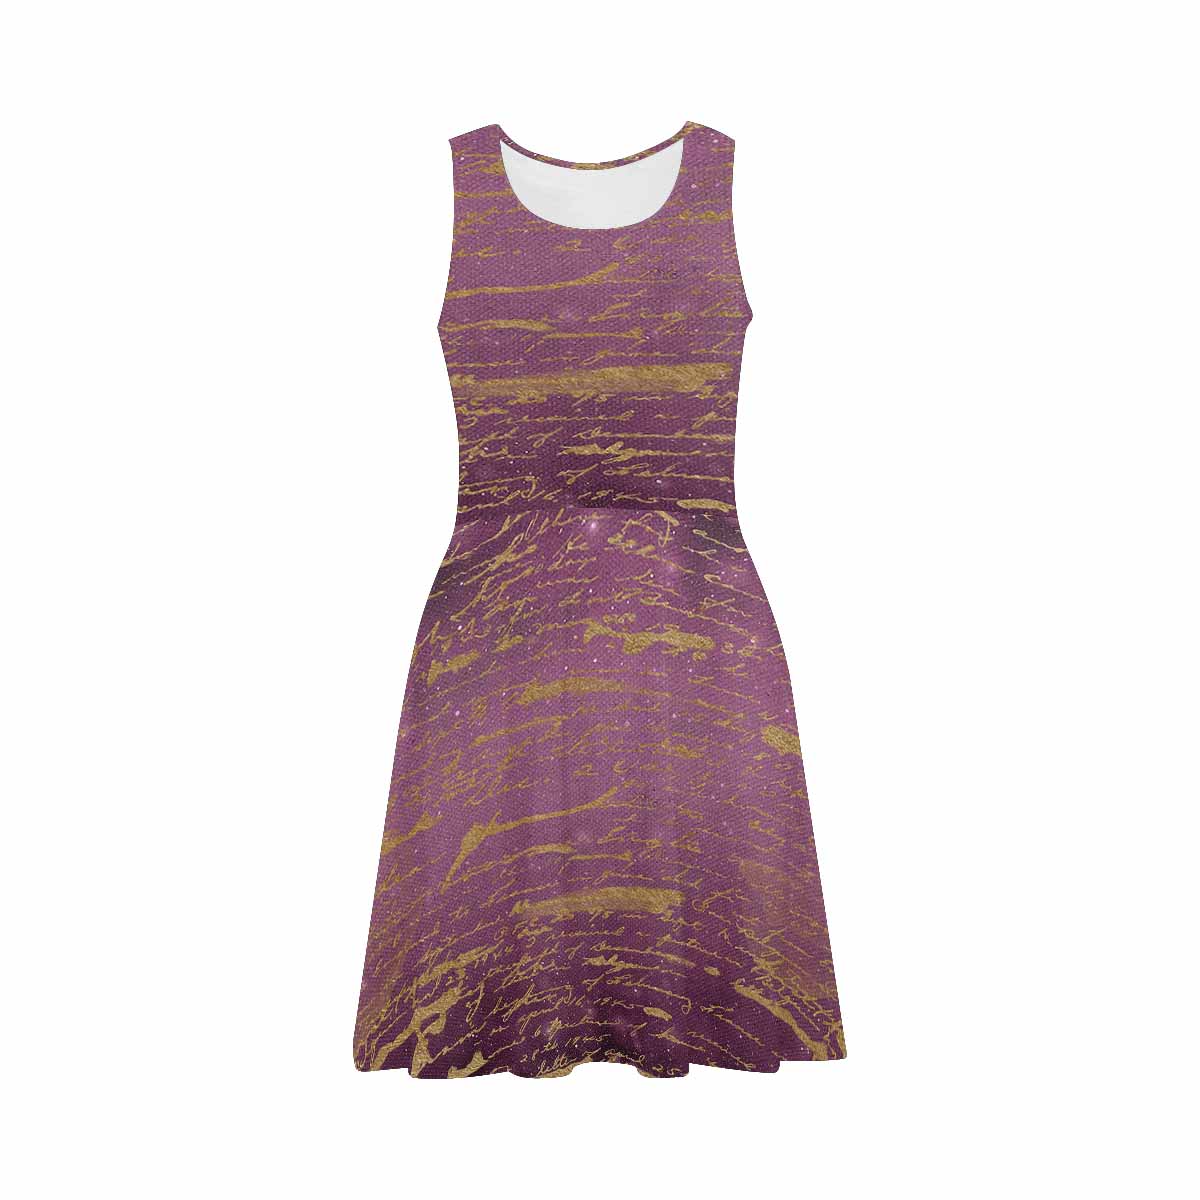 Antique General summer dress, MODEL 09534, design 51